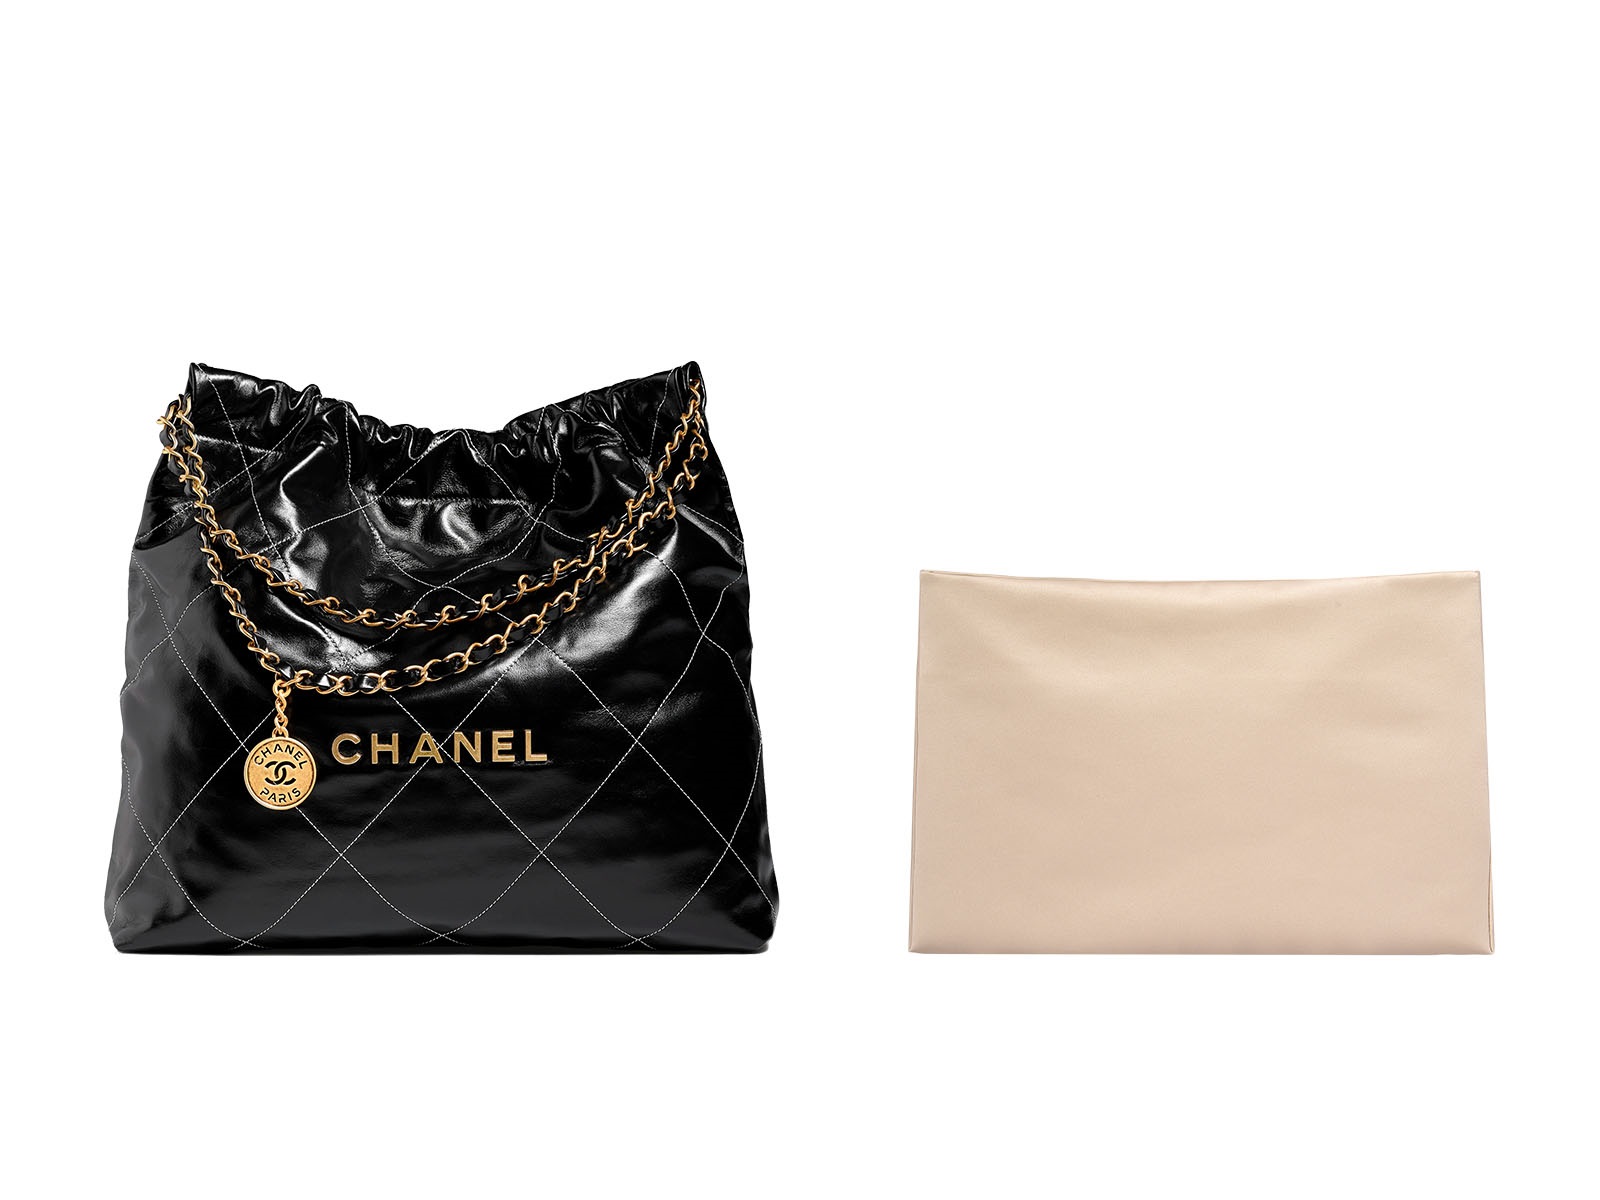 シャネル22スモール バッグインバッグ for Chanel 22 small